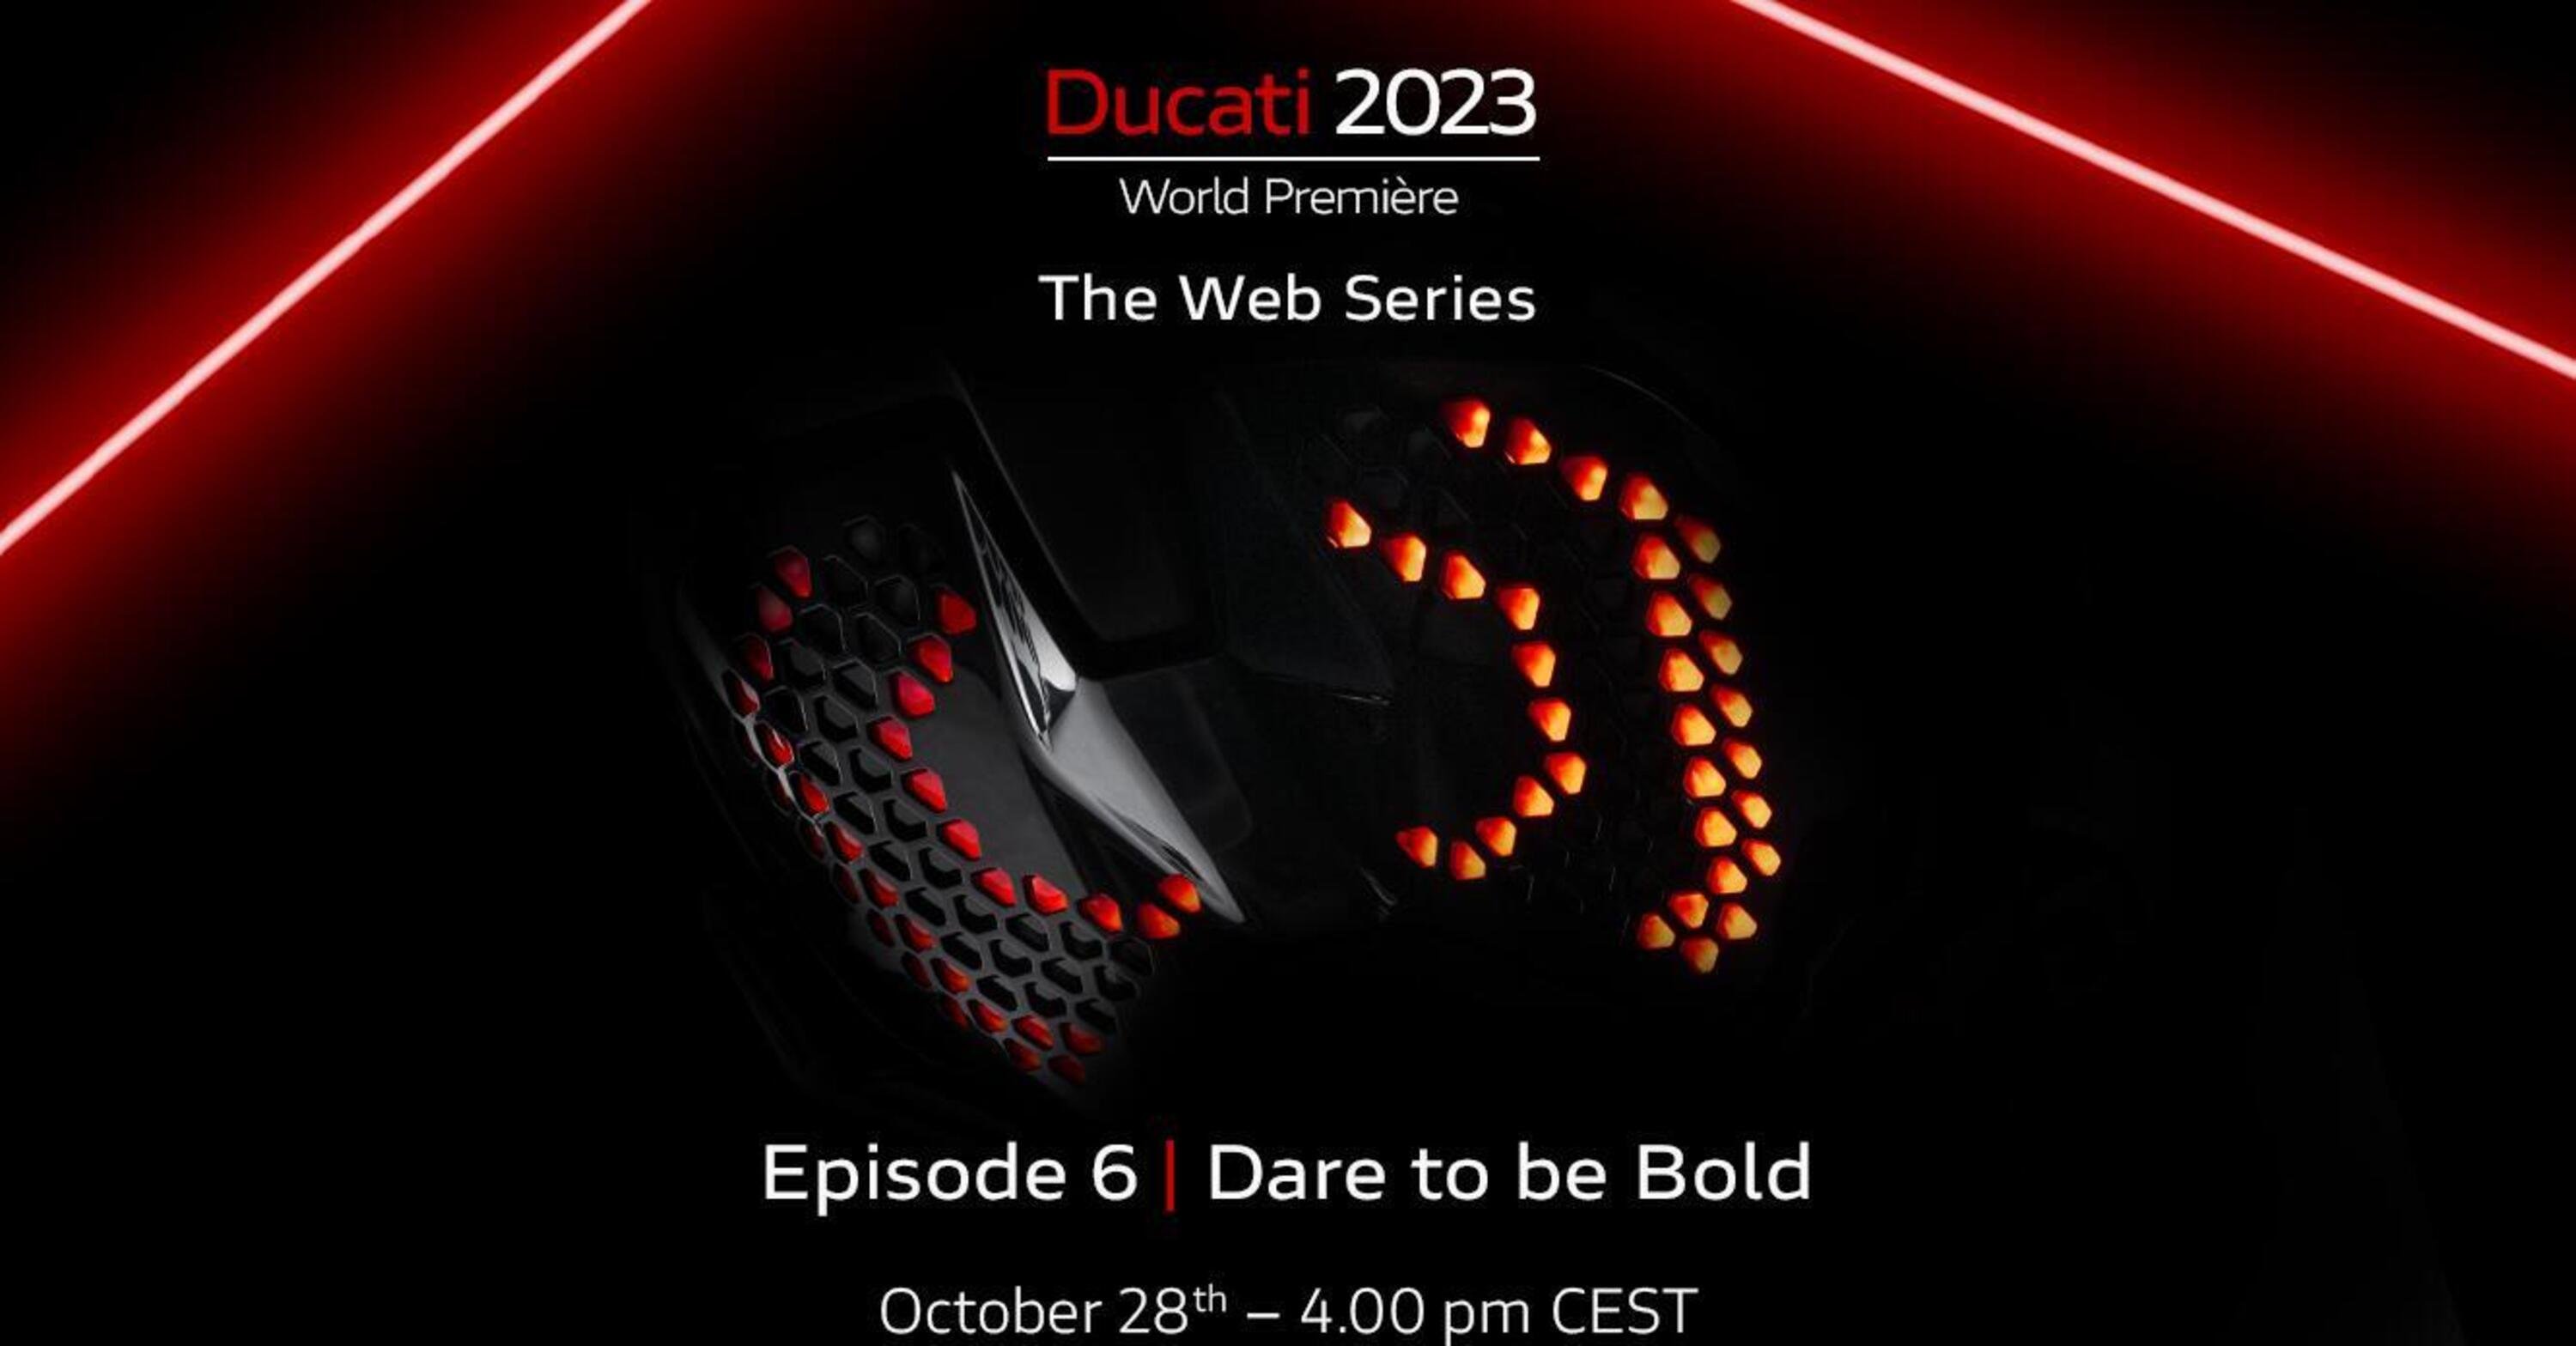 Ducati e la sesta novit&agrave; 2023: &ldquo;Dare to be Bold&rdquo;. Secondo voi?